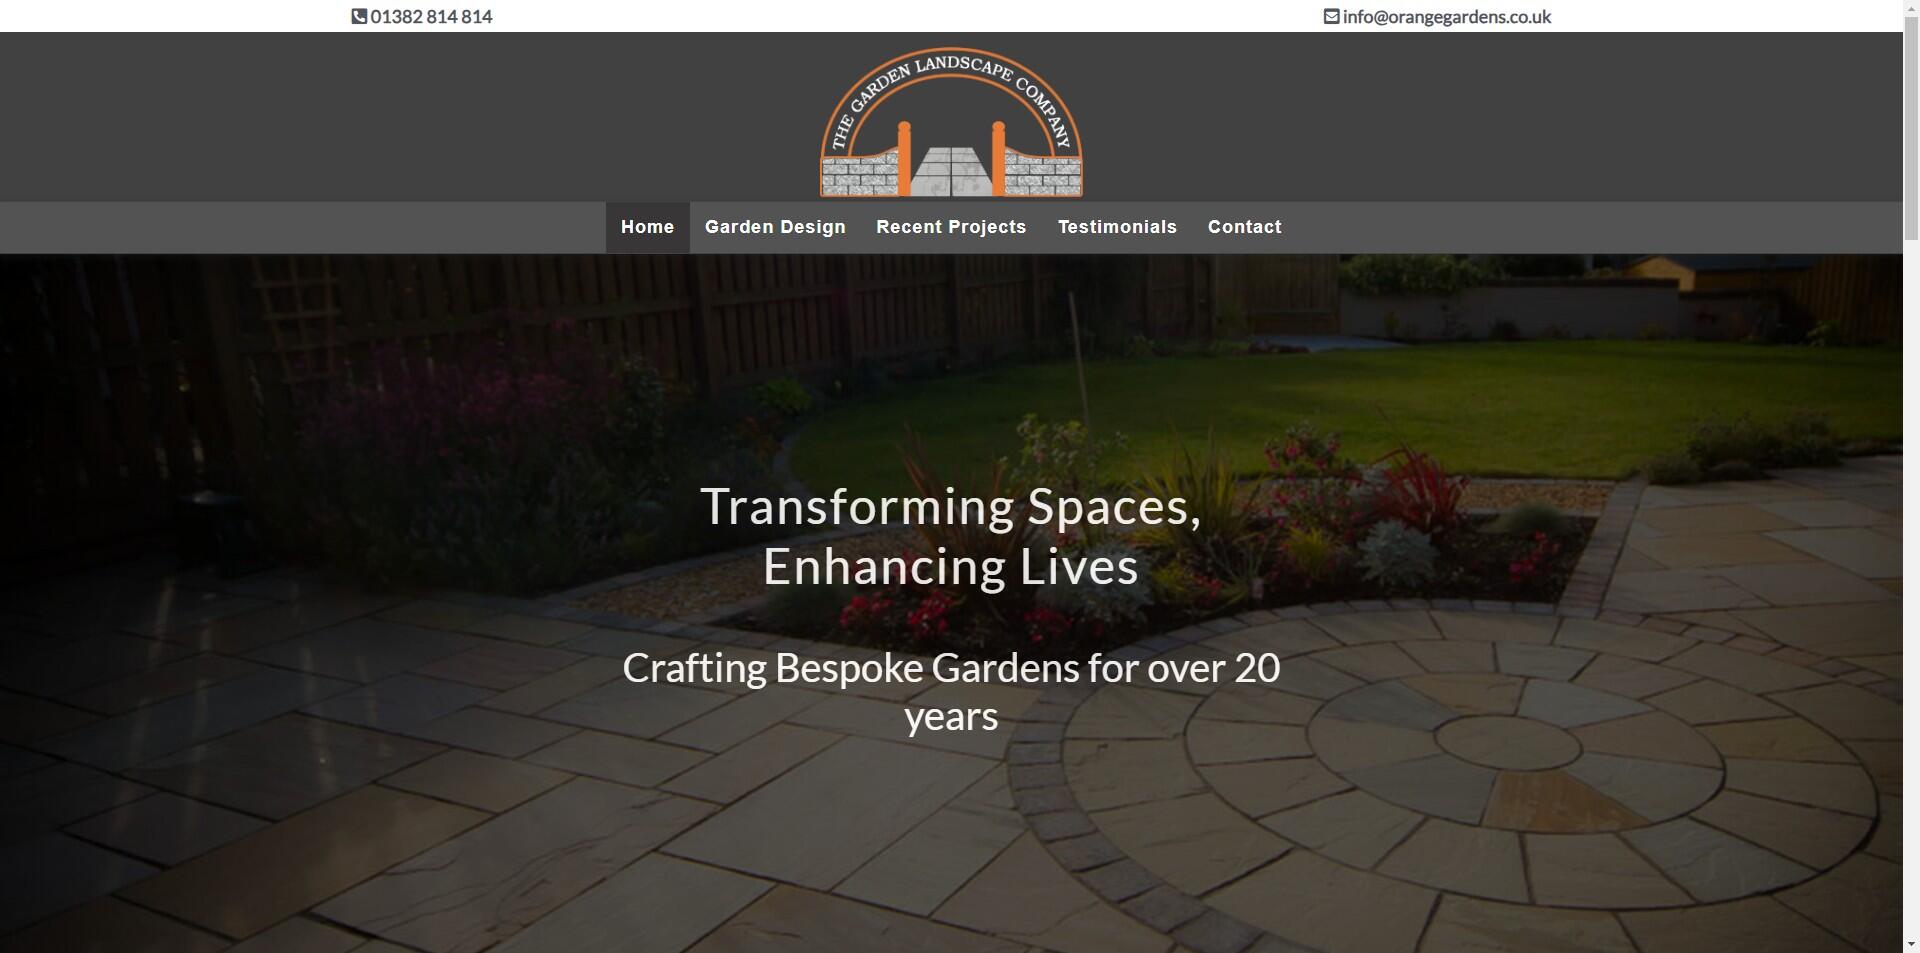 website designed for Garden Landscape Company